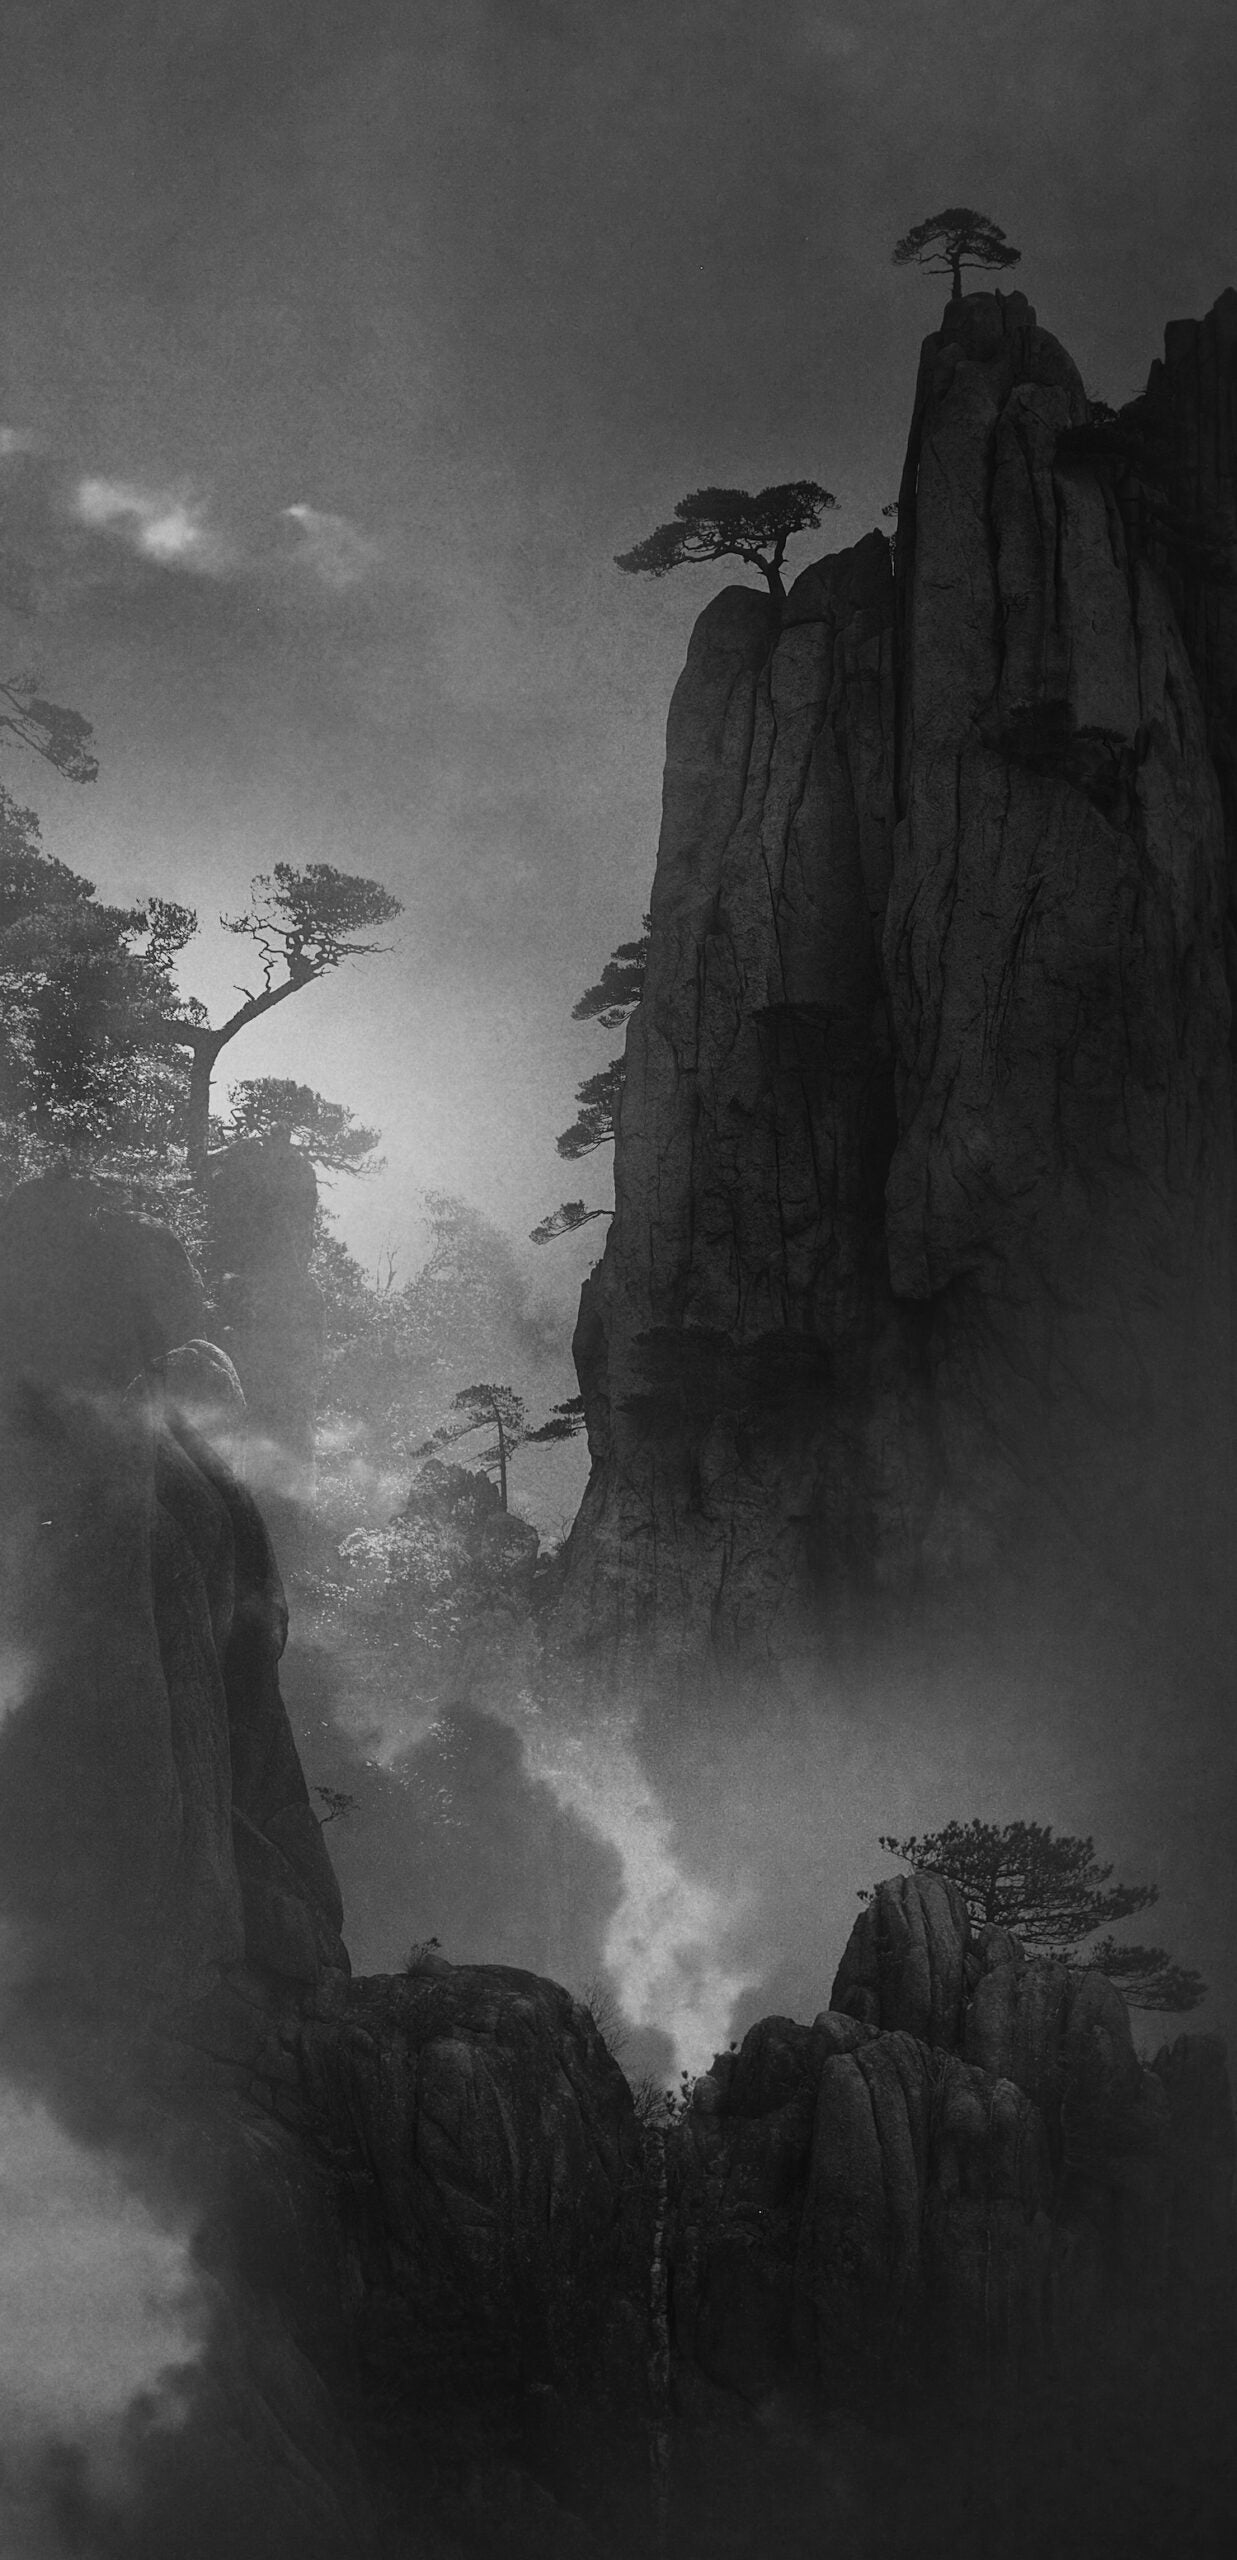 这张黑白风景照片是由中国摄影师施宏华创作的，他获得了风景/自然类奖项。